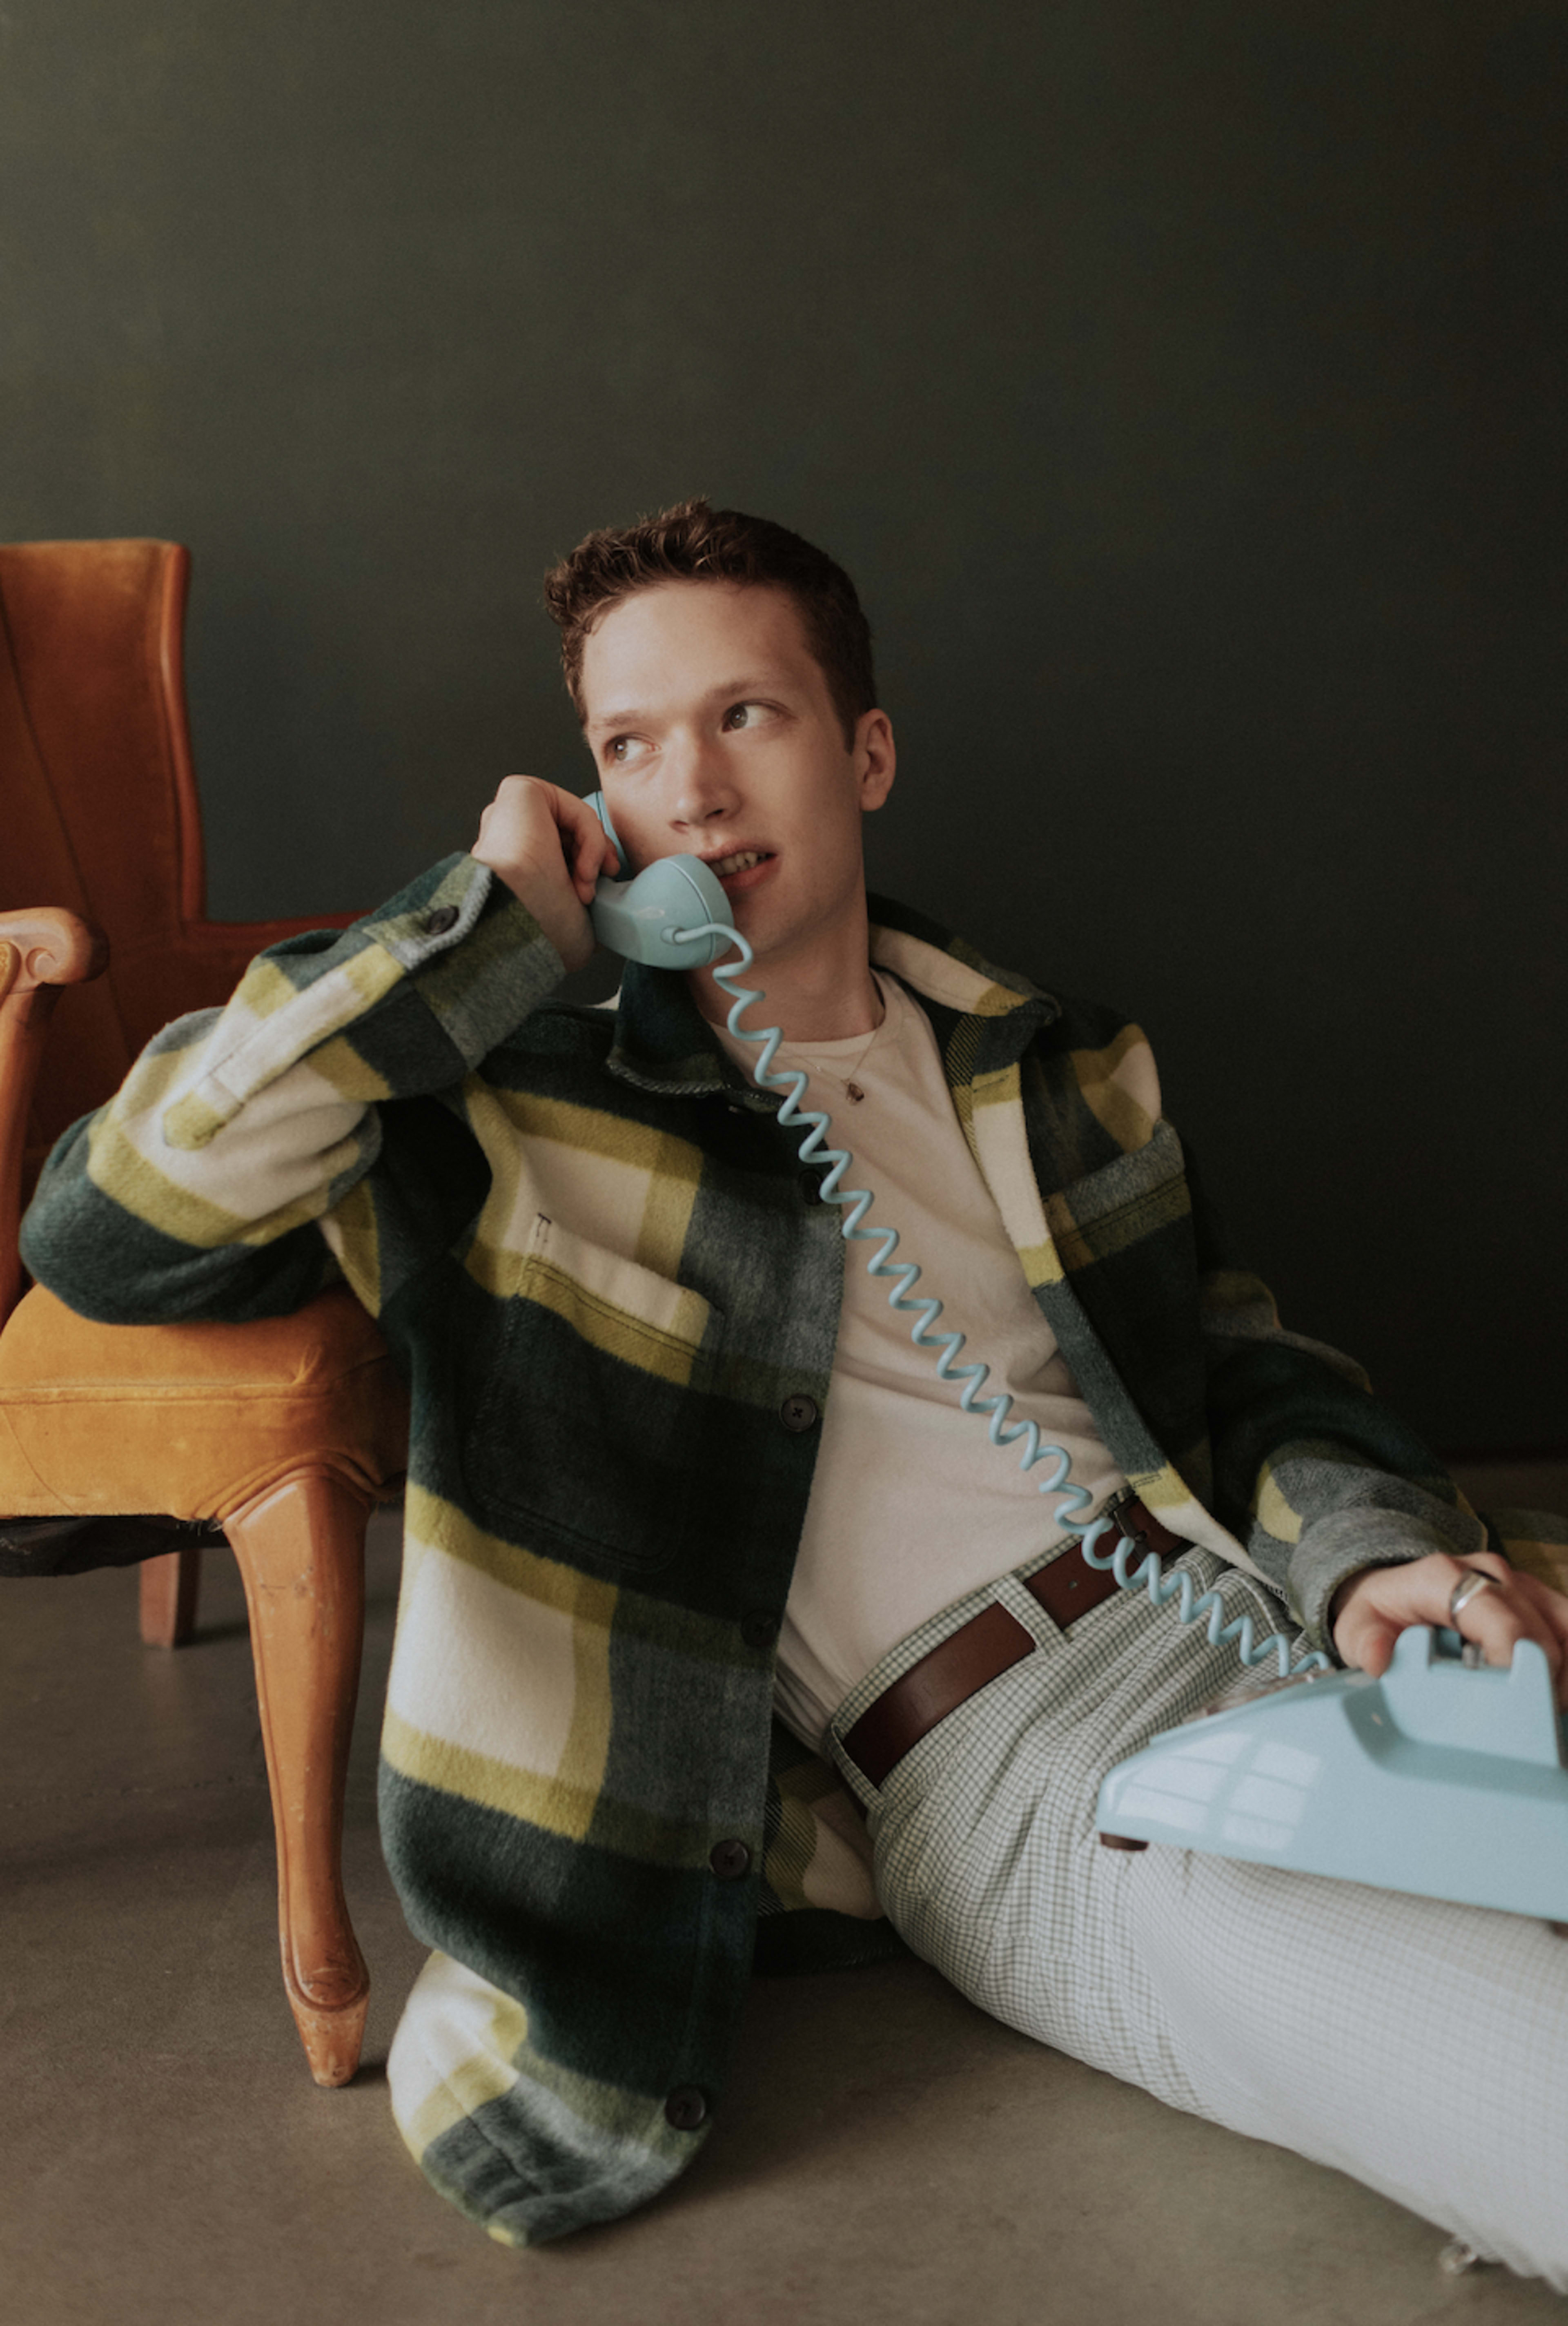 Ein Mann posiert mit einem Telefon für ein Retro-Fotoshooting.